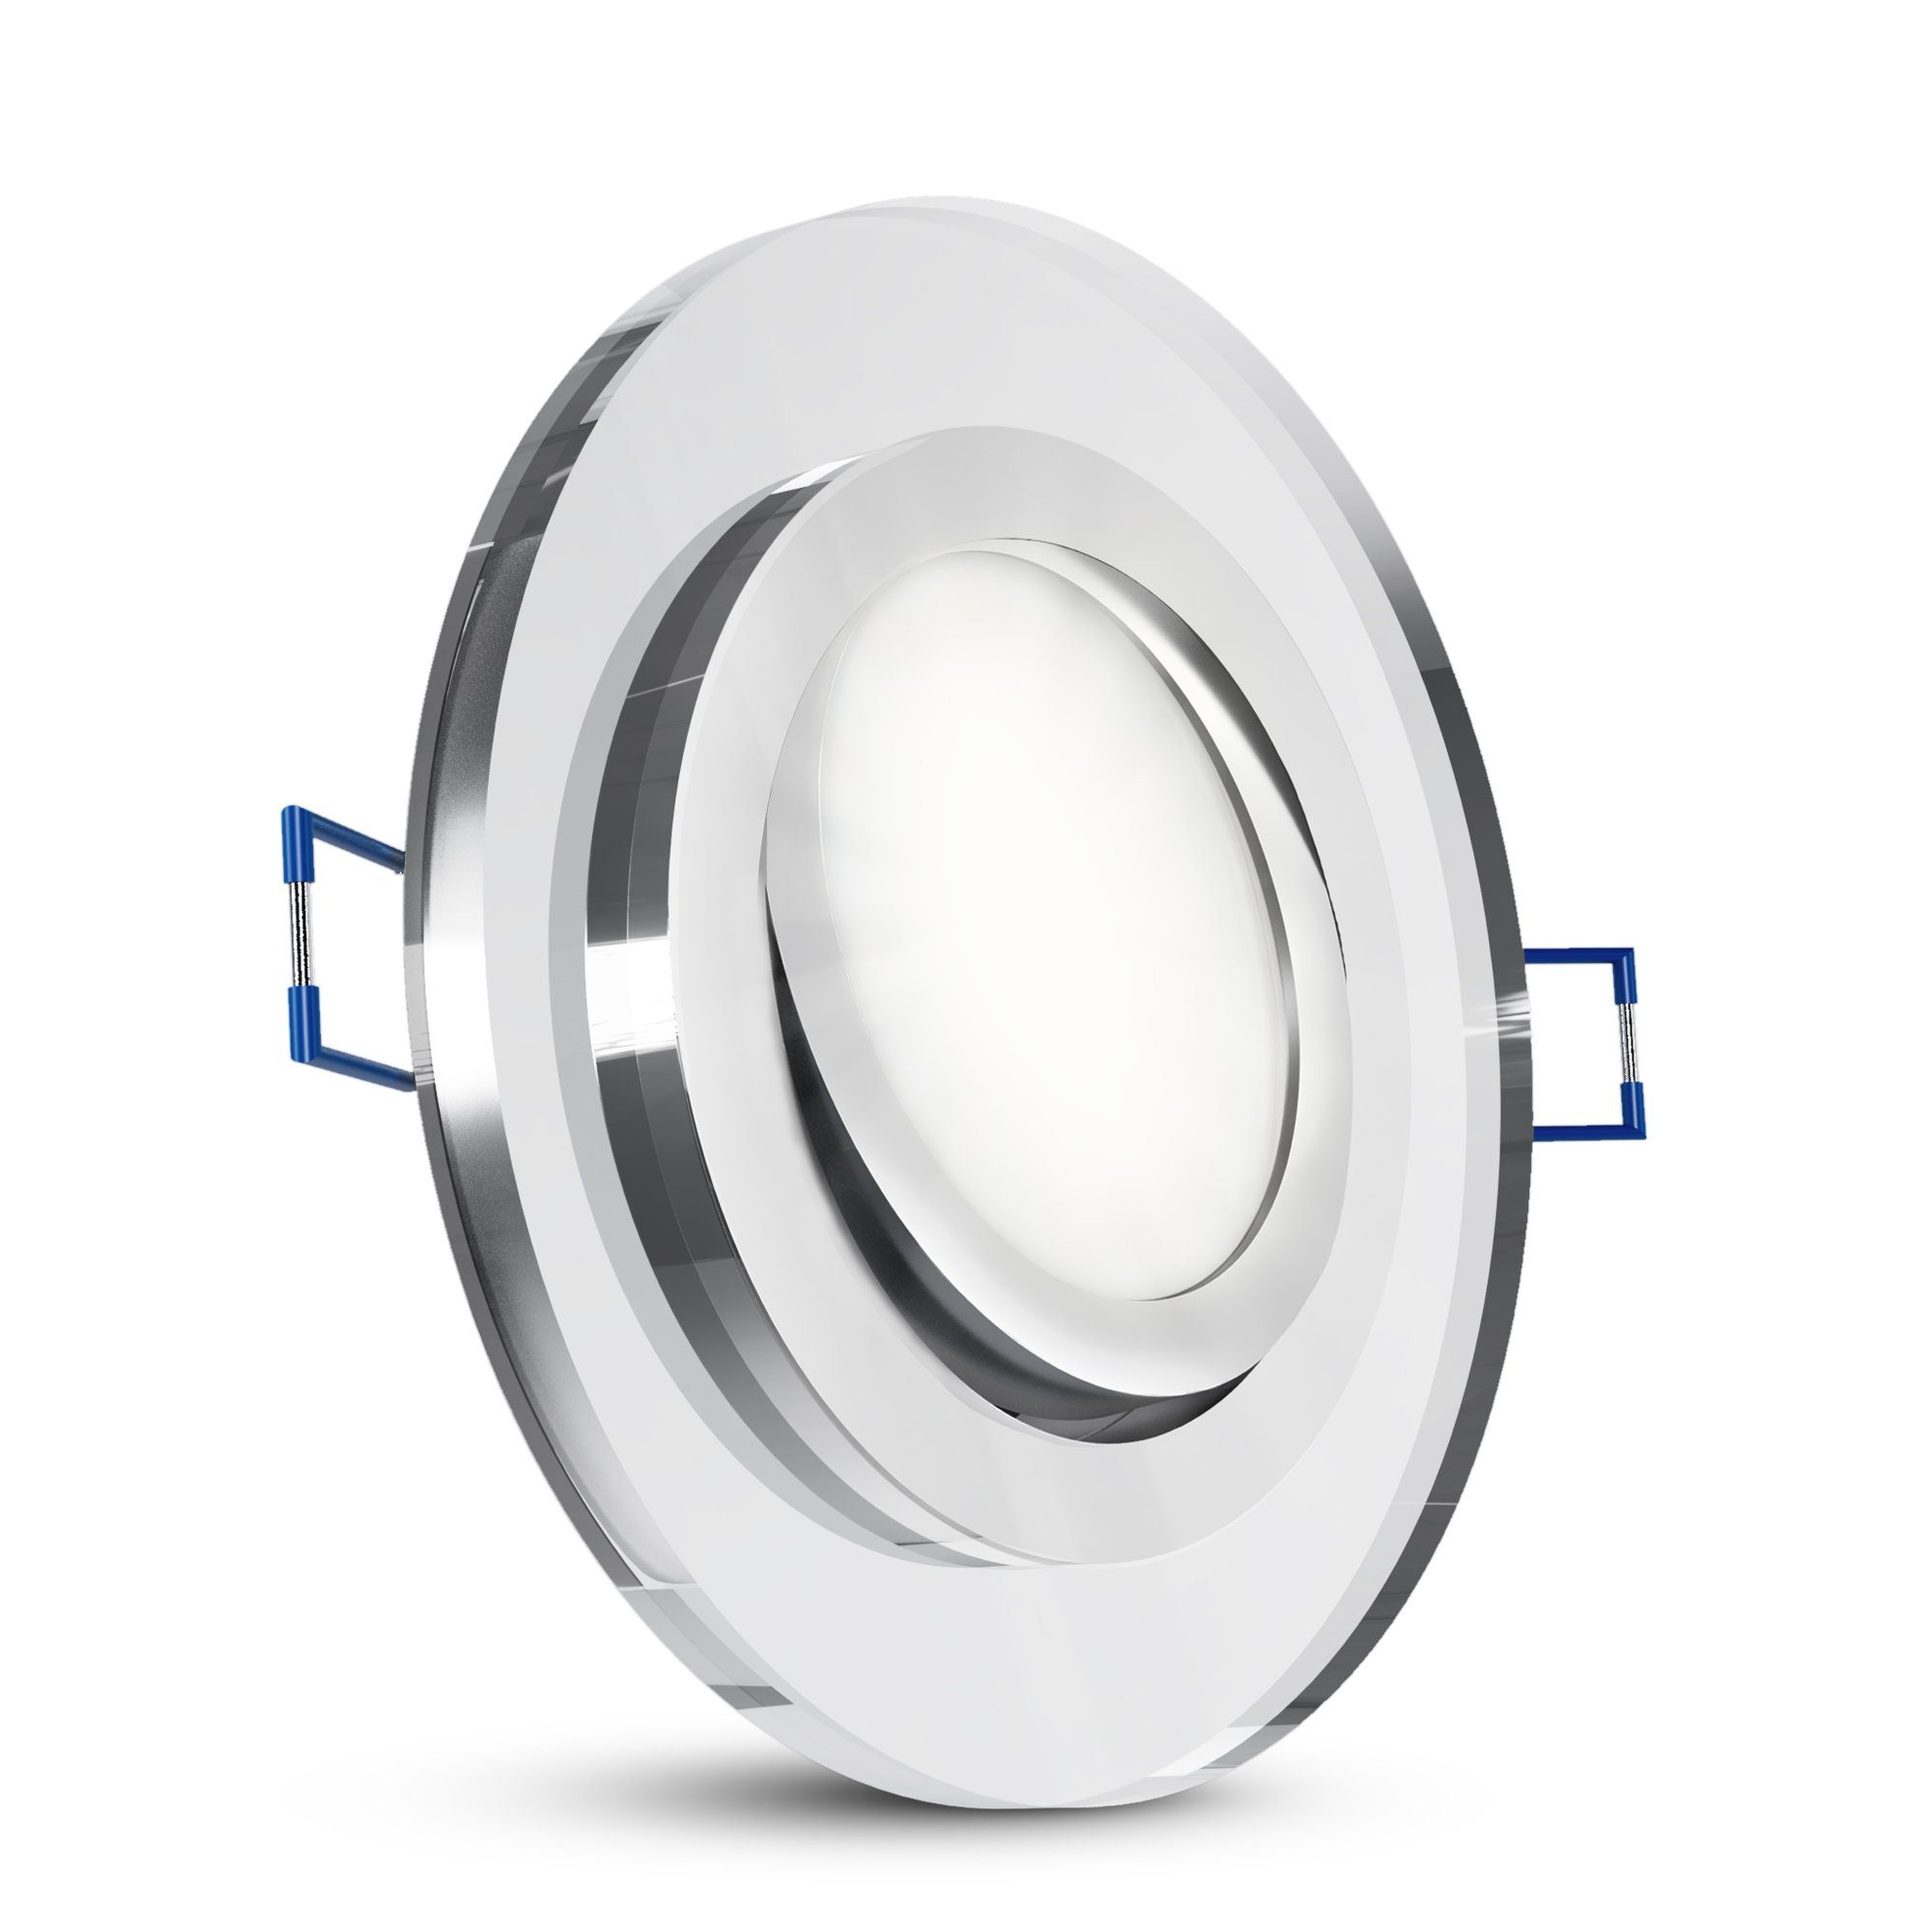 SSC-LUXon LED Einbaustrahler Flacher Glas LED Einbauspot schwenkbar rund klar mit LED Modul neutral, Neutralweiß